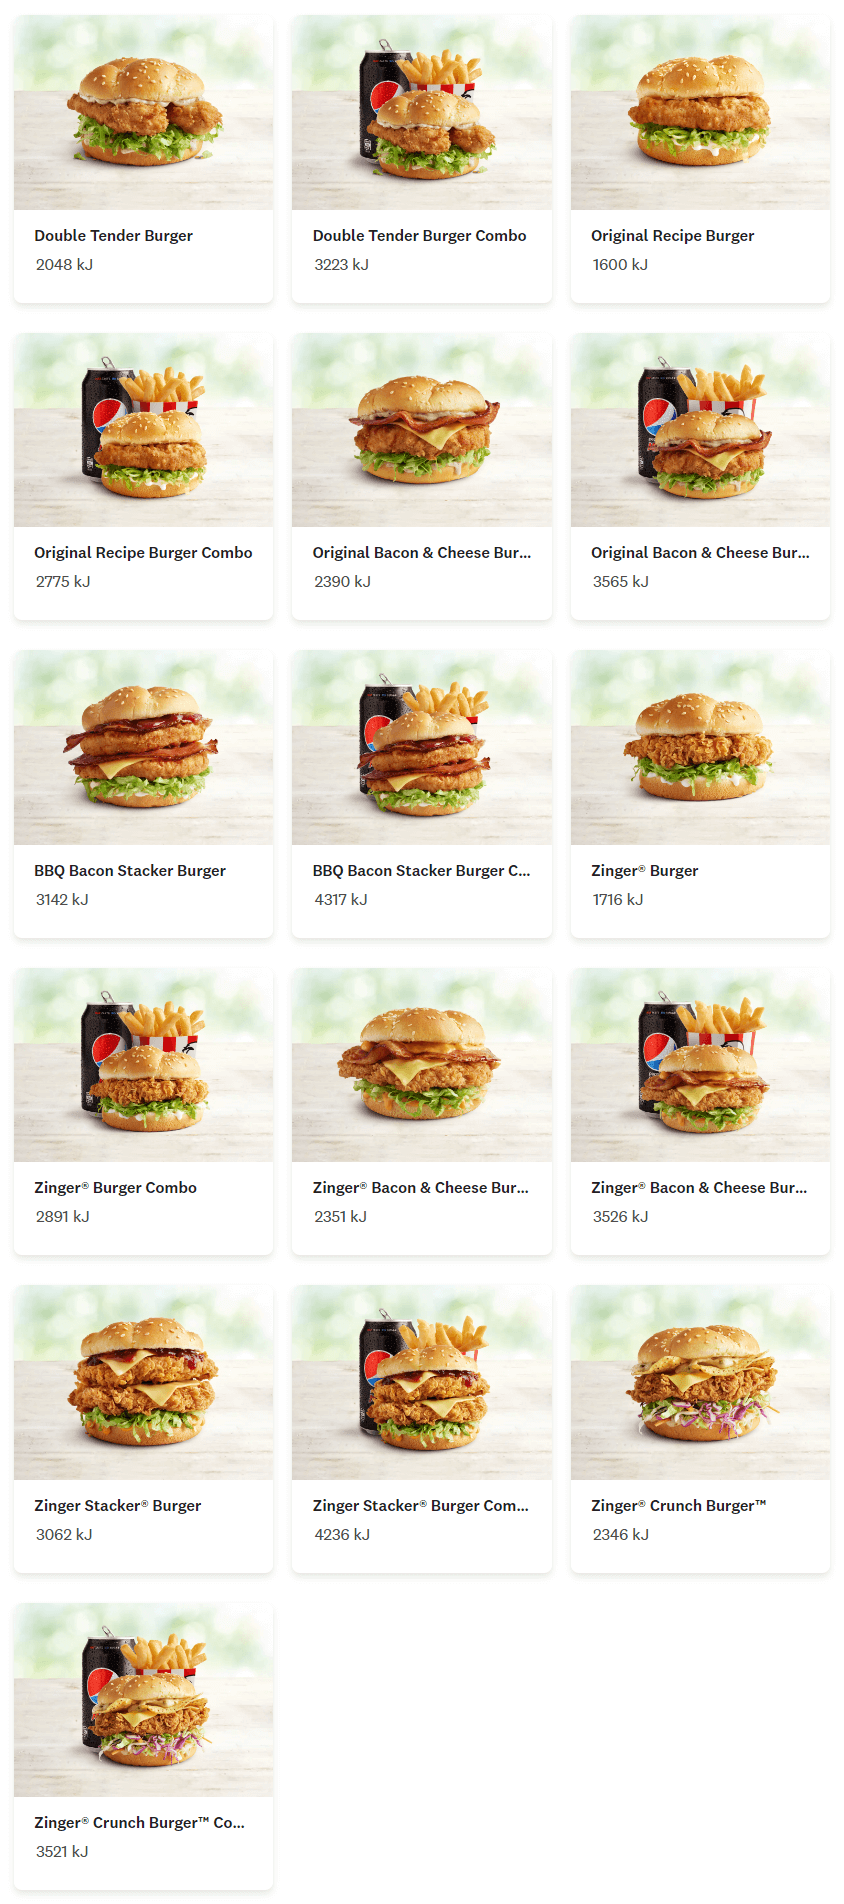 kfc burgers menu prices